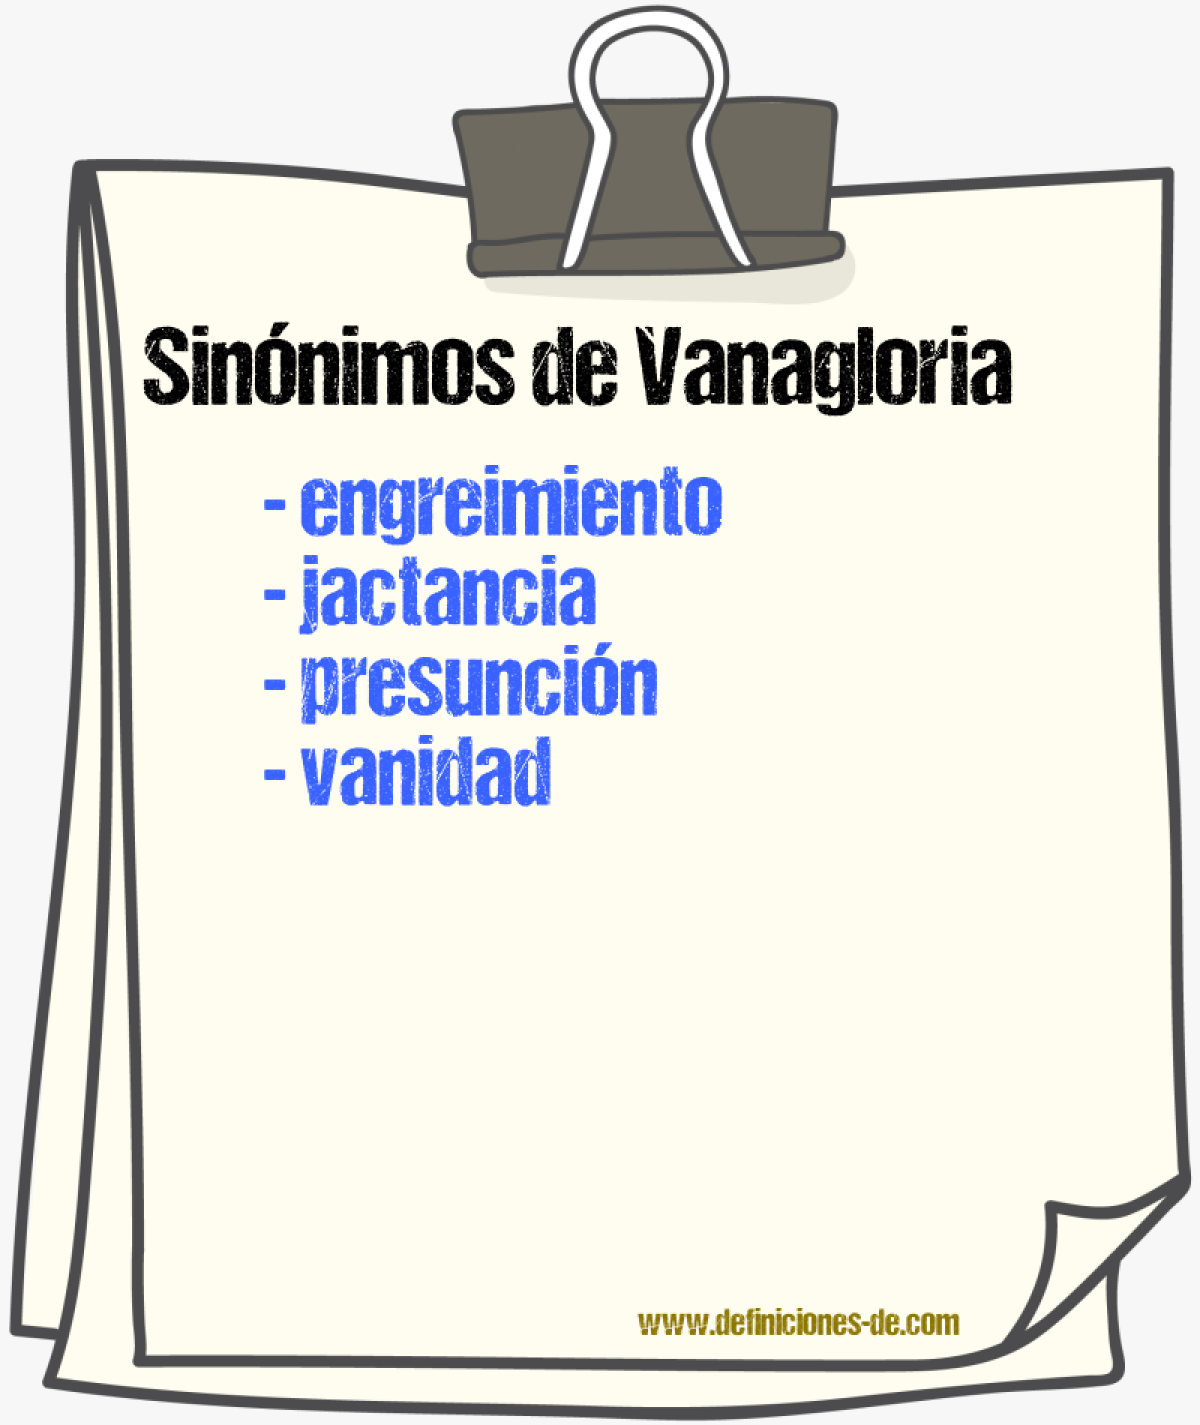 Sinónimos de vanagloria